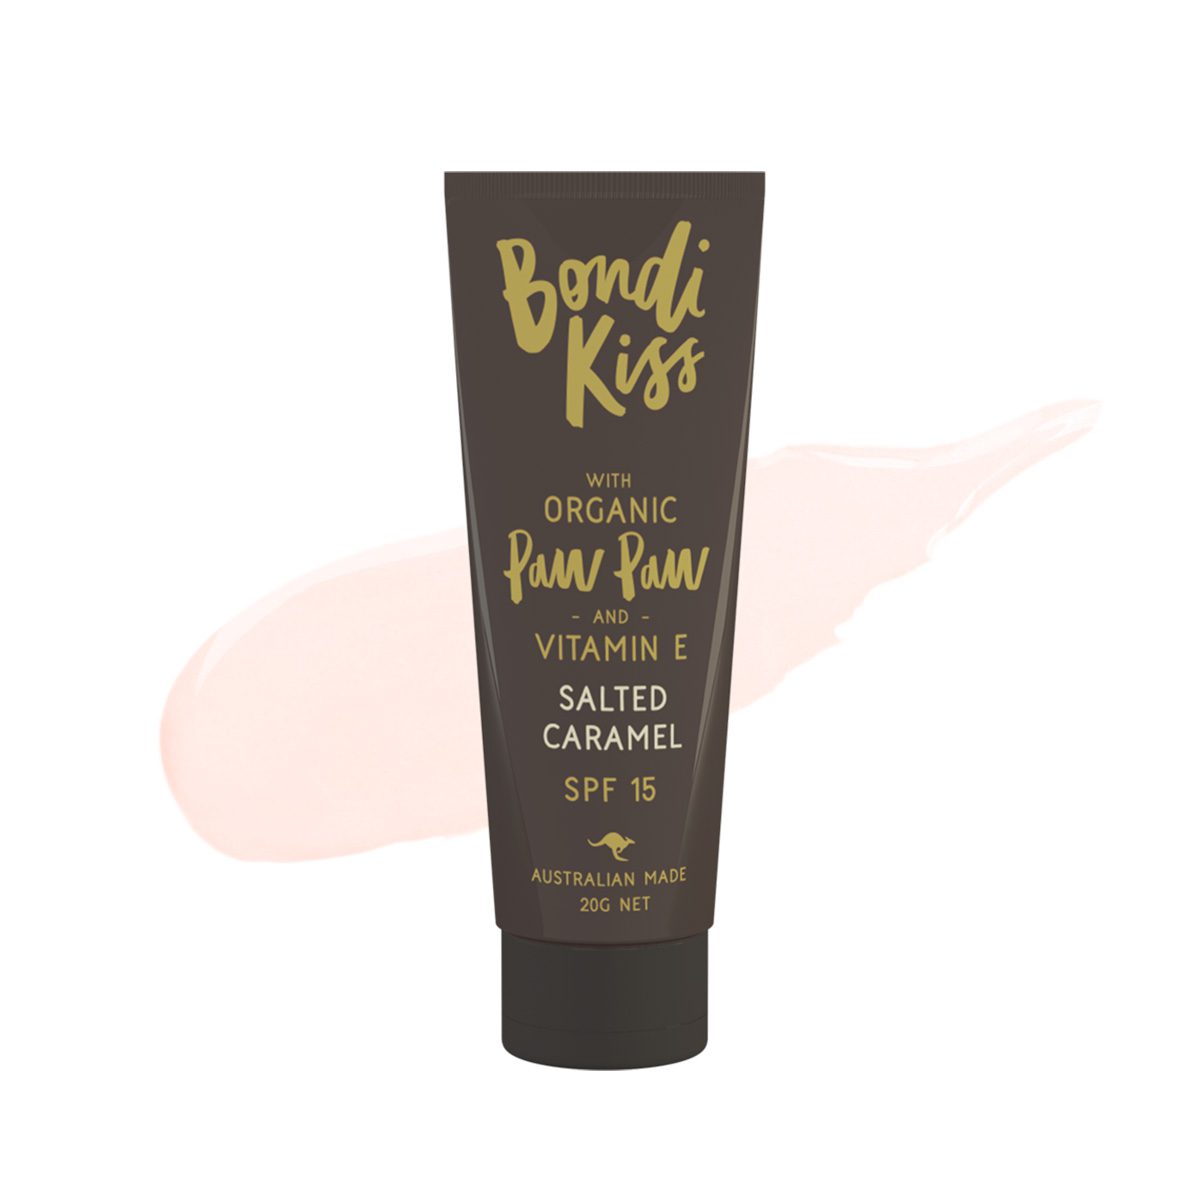 BONDI KISS // Salted Caramel Paw Paw